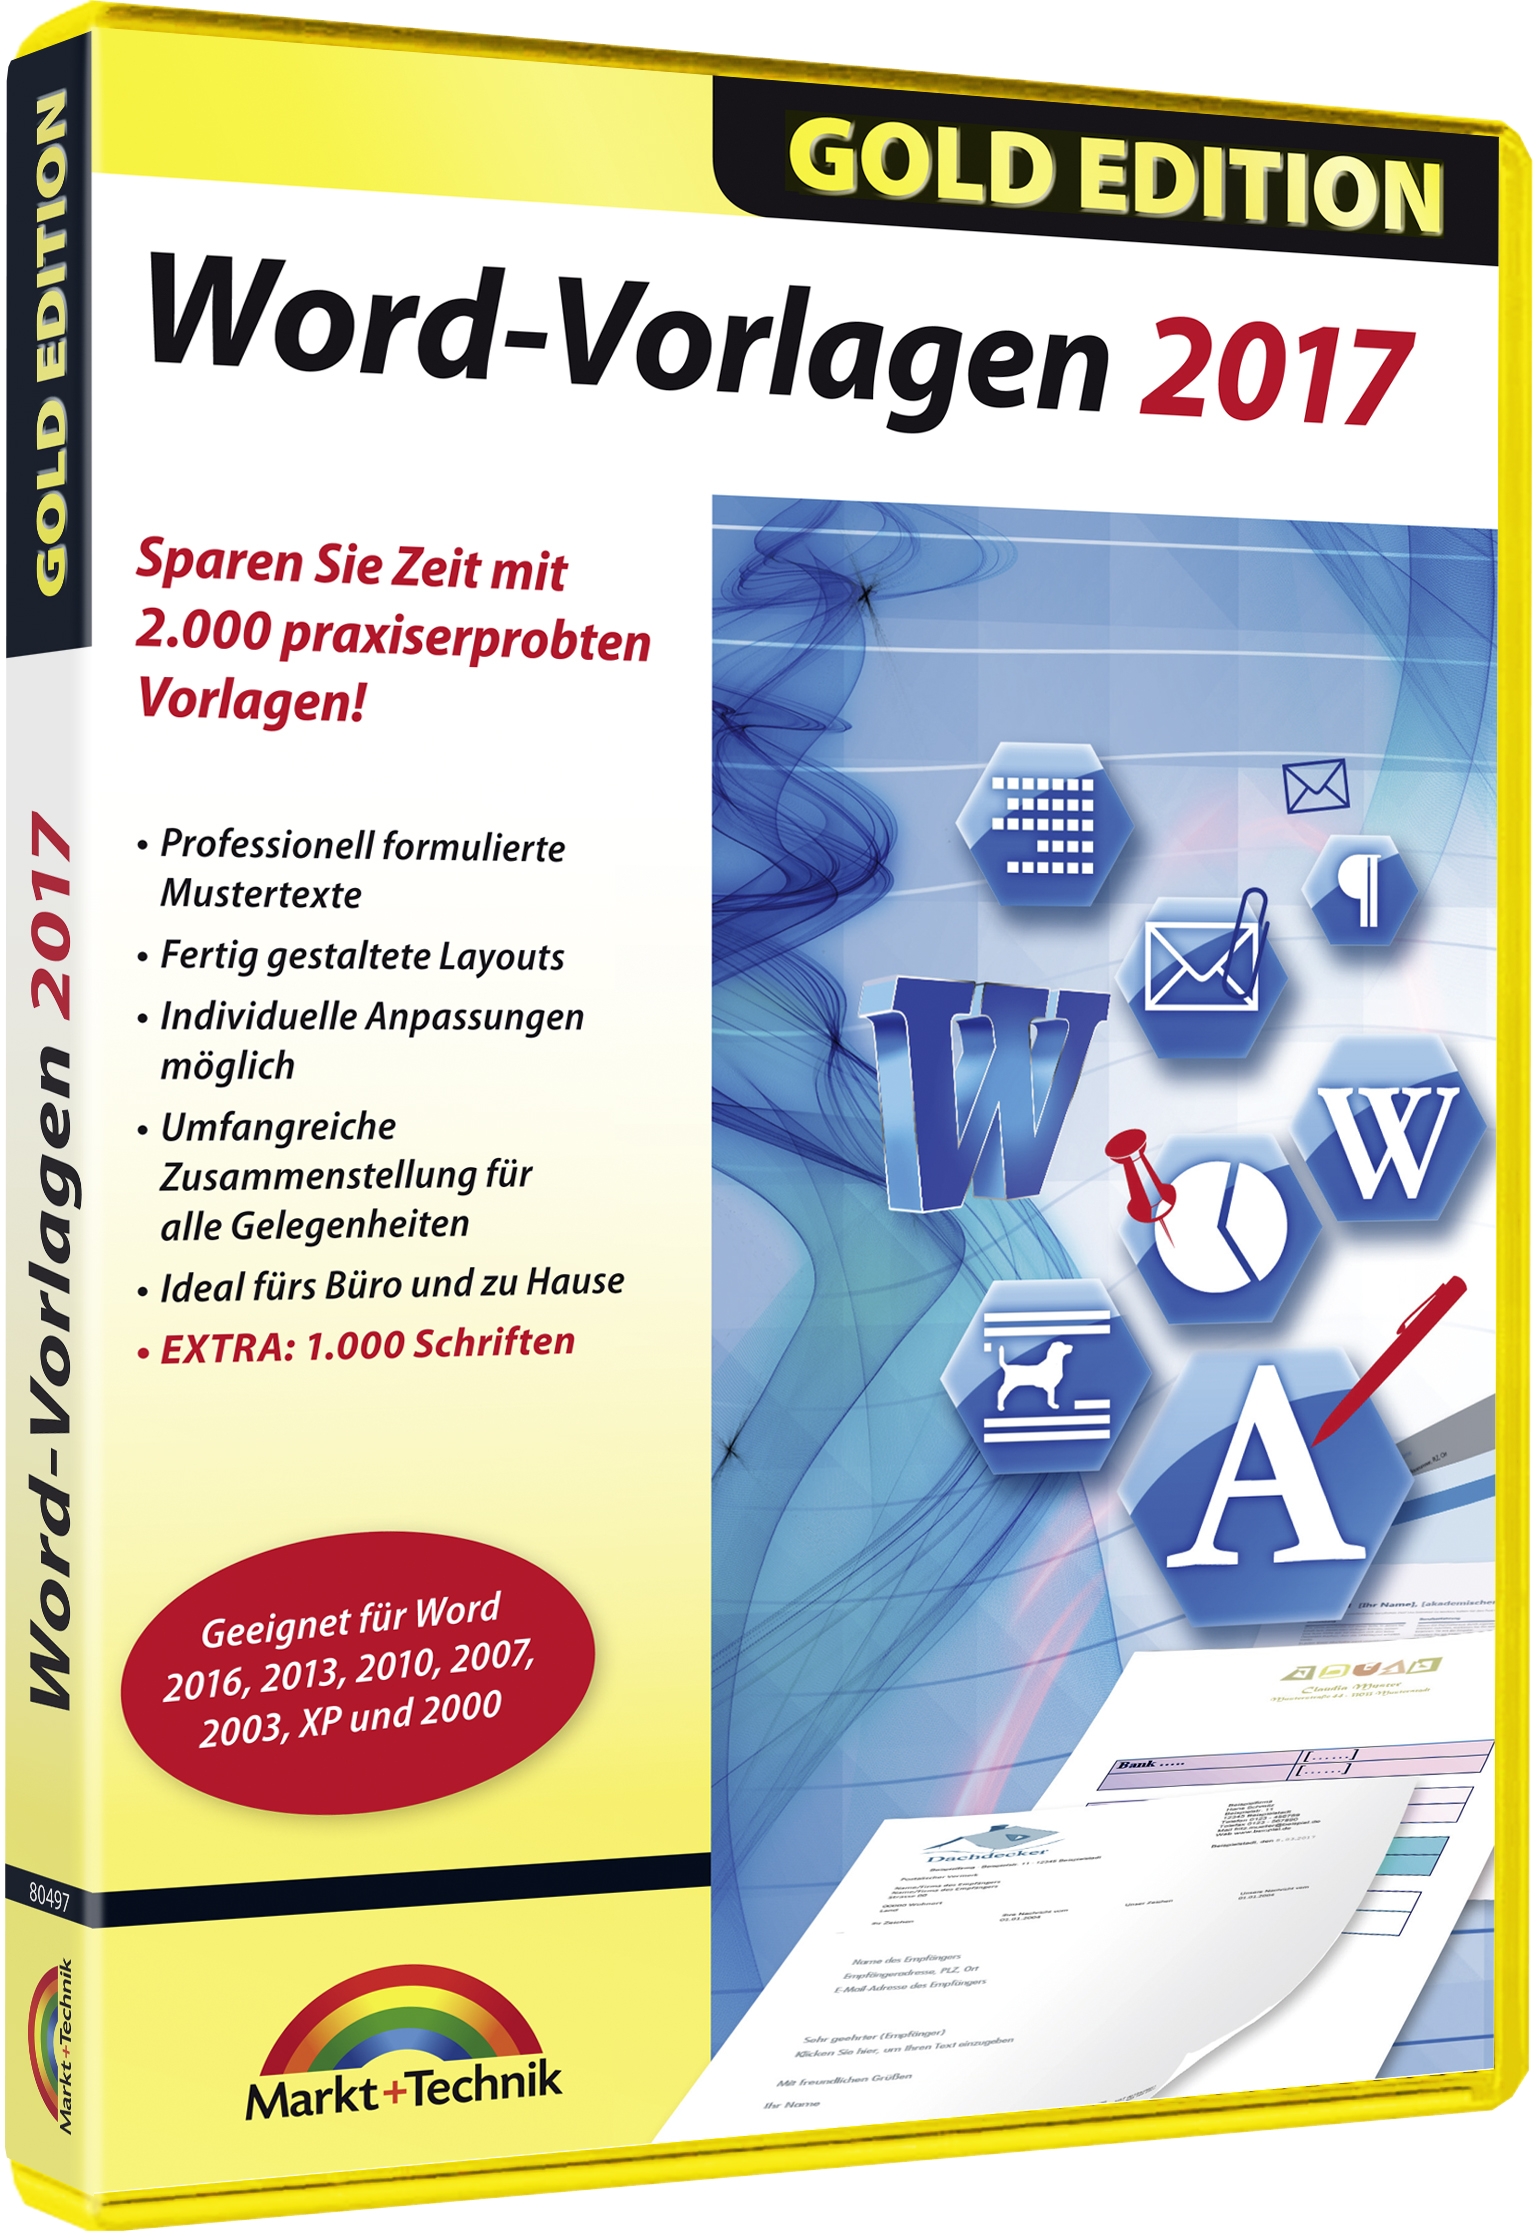 Vorlagen Fur Word Excel Und Office Zeit Sparen Mit Umfangreichen Mustersammlungen Markt Technik Verlag Gmbh Pressemitteilung Pressebox